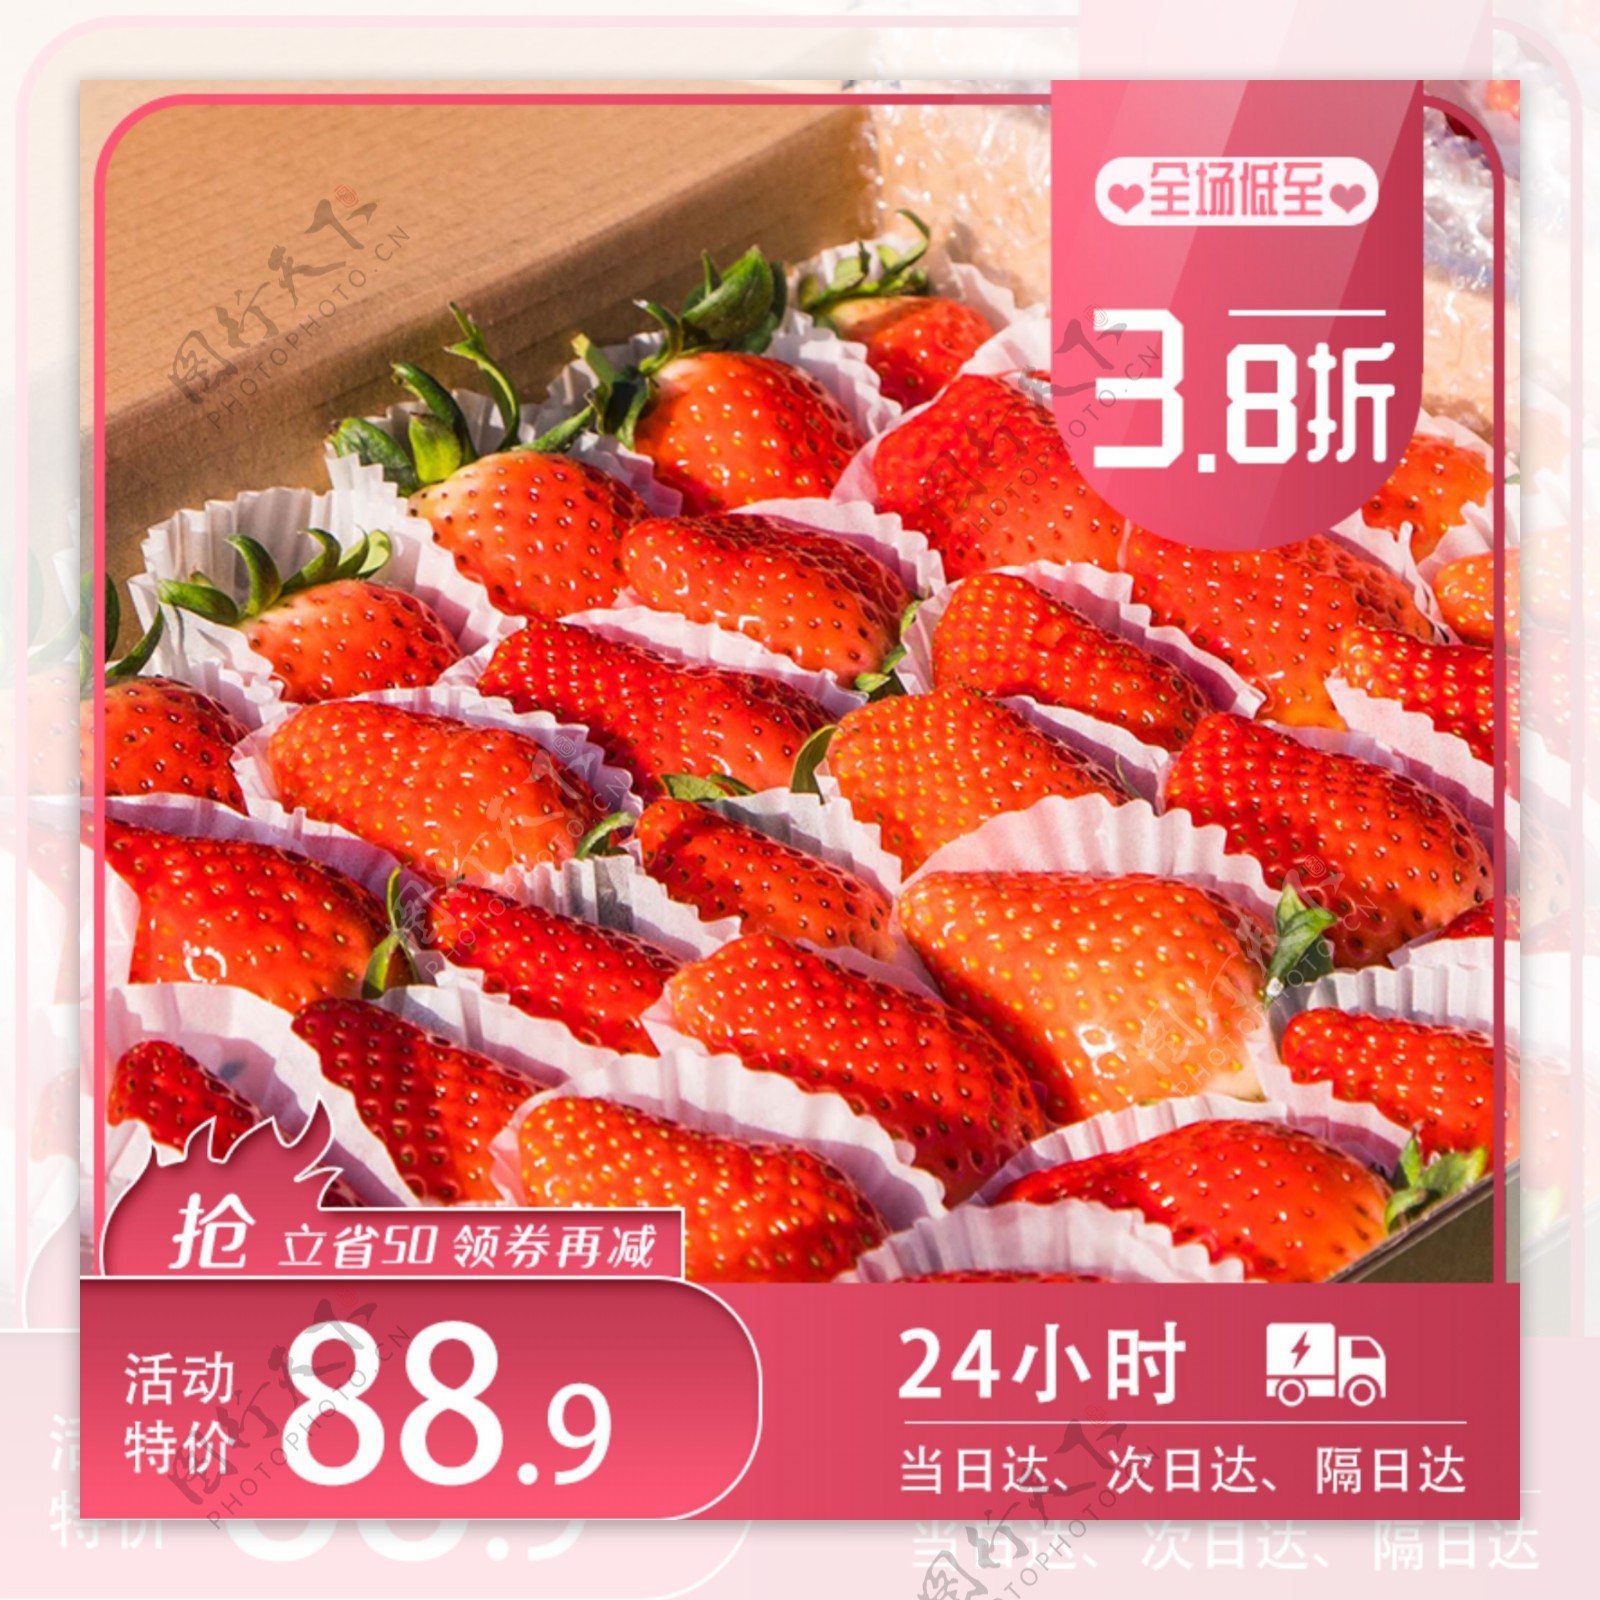 水果生鲜草莓促销淘宝主图